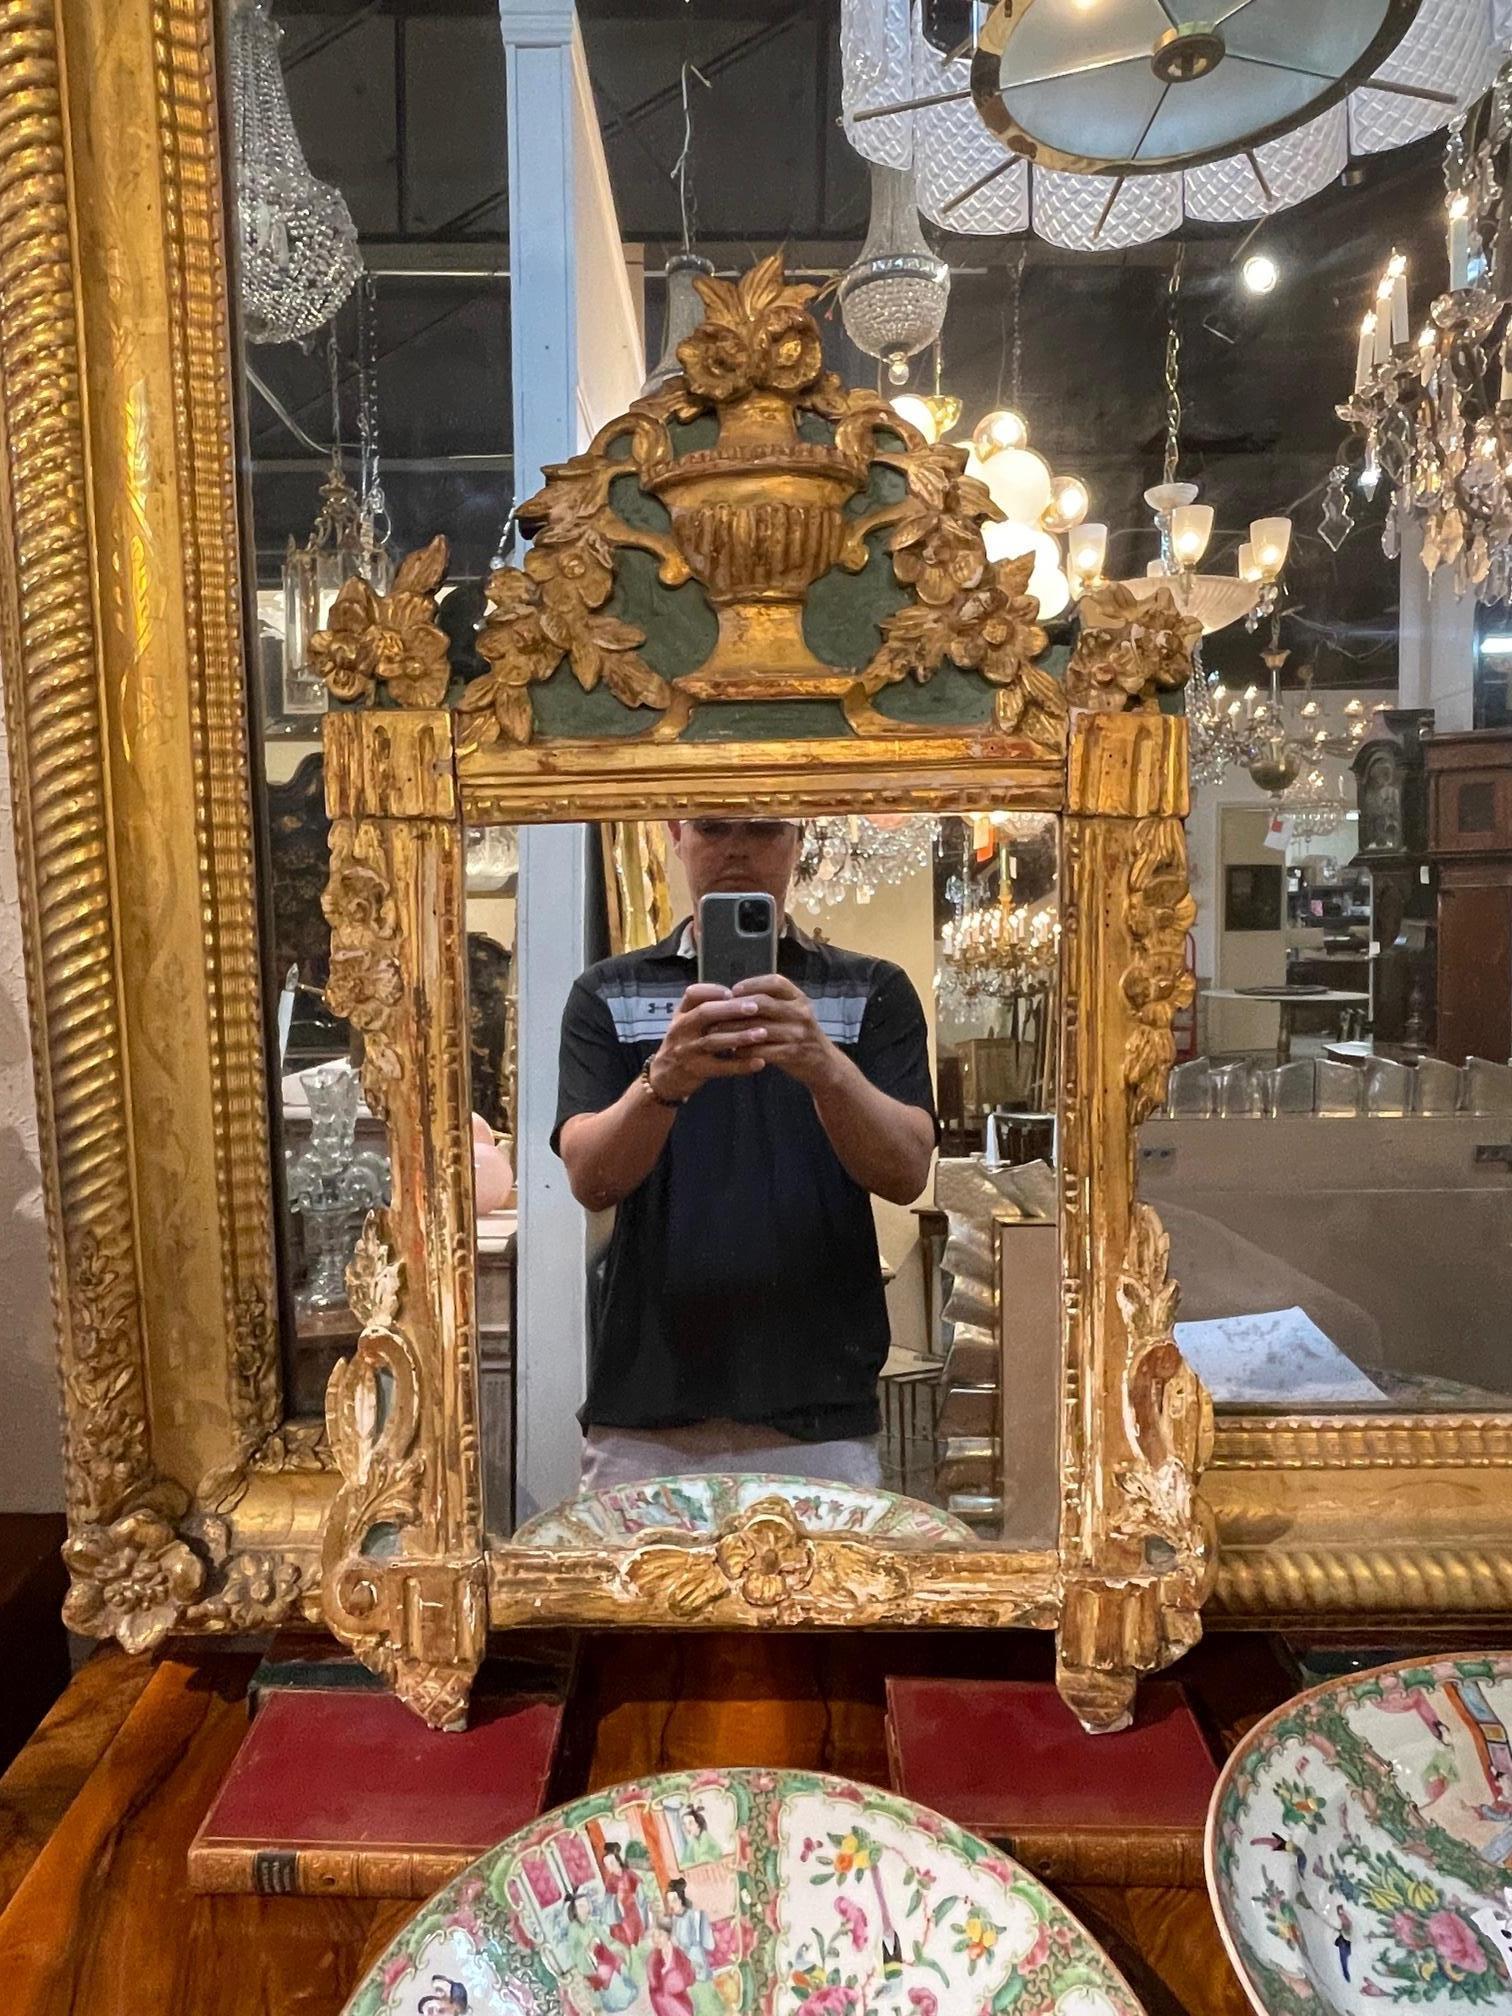 Sehr schöner italienischer Spiegel aus geschnitztem Goldholz aus dem 18. Außergewöhnliche Schnitzereien, darunter eine Urne mit überquellenden Blumen. Ein fabelhafter Blickpunkt für einen schönen Raum! Auch die Patina ist wunderschön.